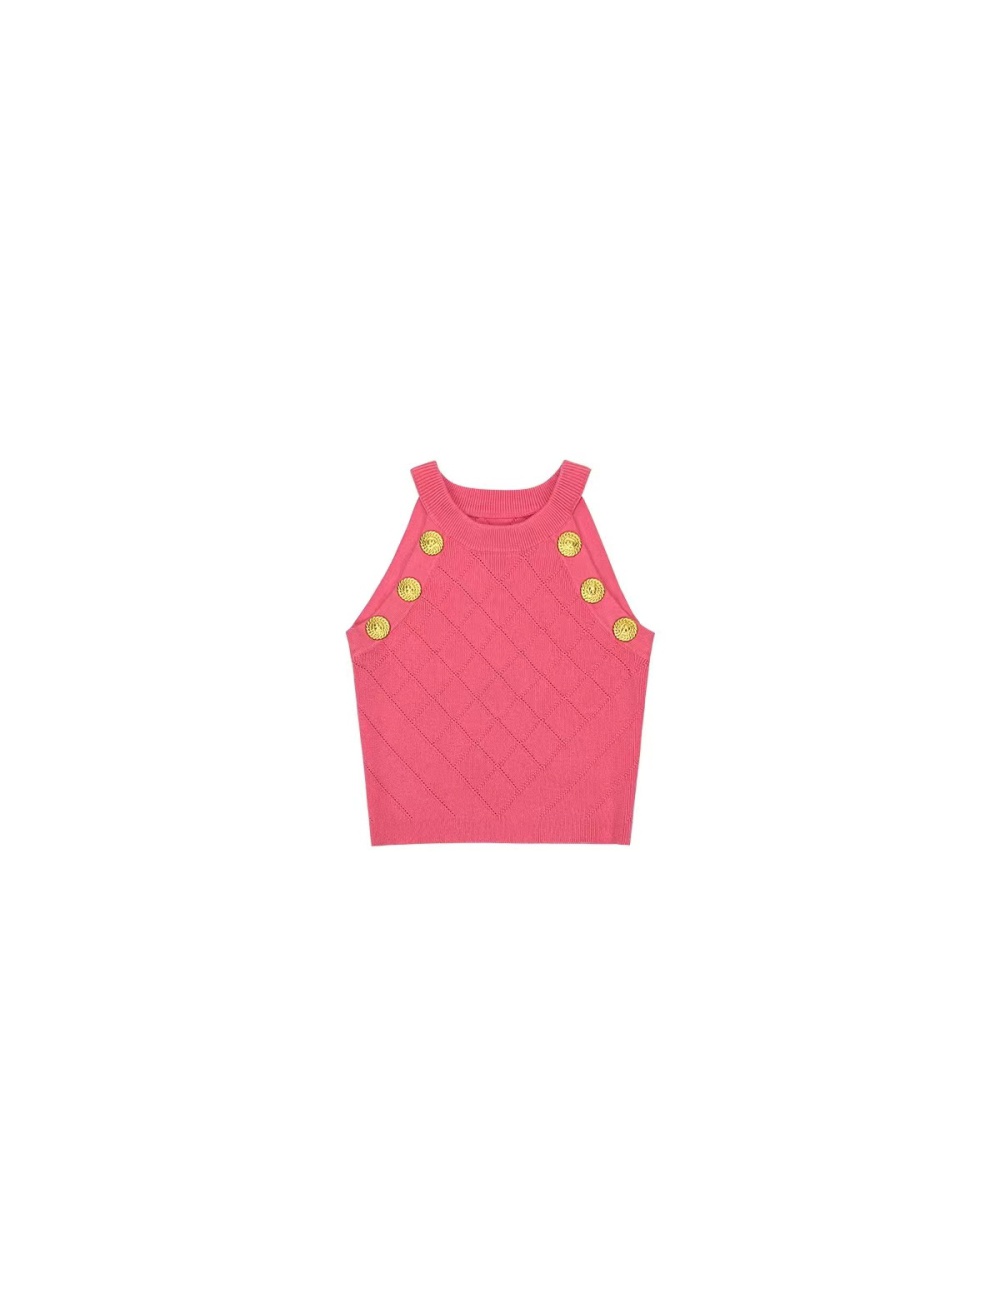 Gold buckle short tops slim stereoscopic vest for women